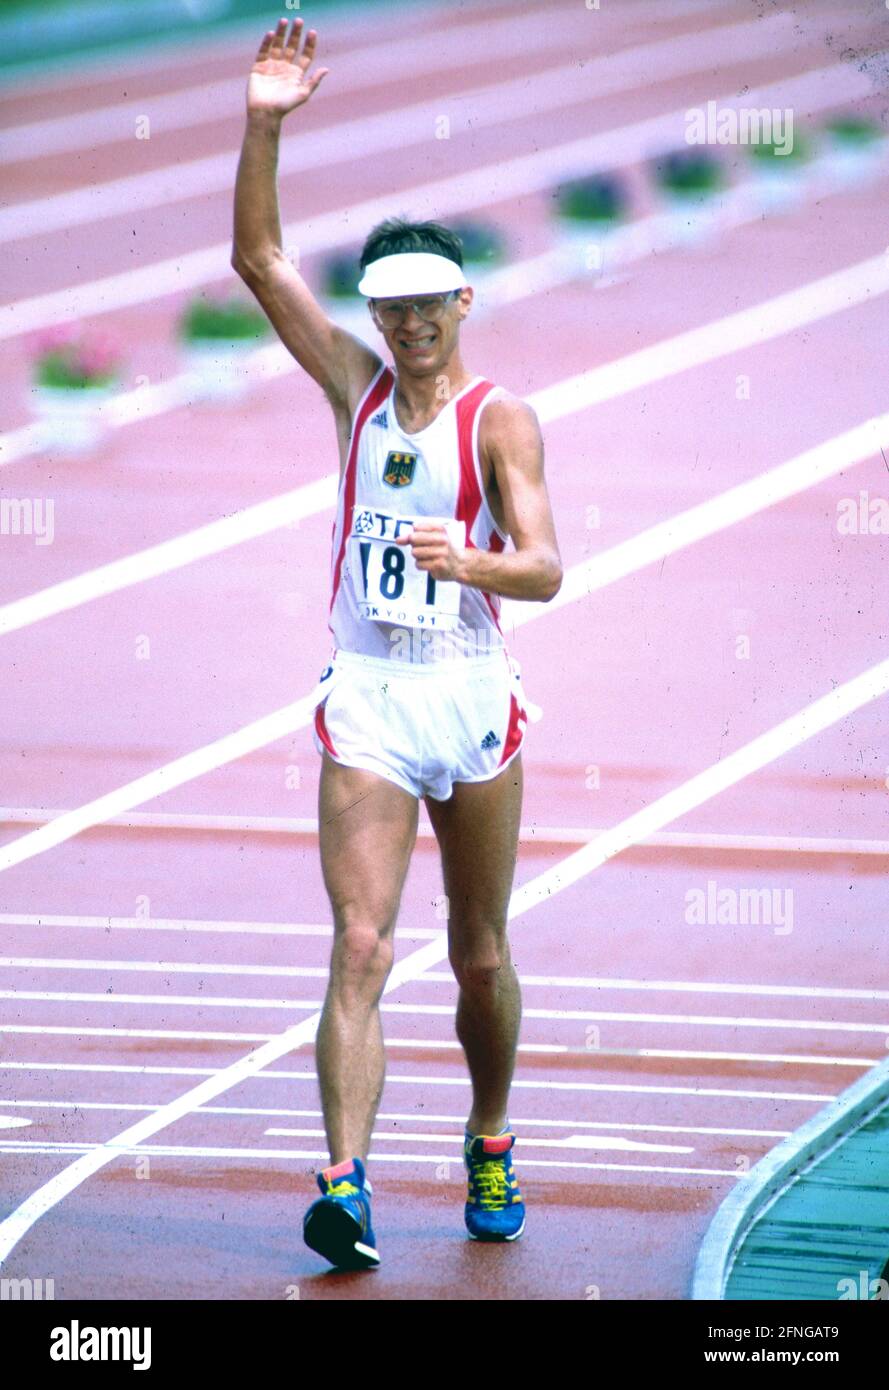 El ex caminante Hartwig GAUDER ha muerto a la edad de 65 años. Foto de archivo: Atletismo: Hartwig Gauder , Alemania, campeón olímpico de andadores 1980, aquí en el Campeonato Mundial de Atletismo de 1991 en Tokio, donde terminó tercero (3rd) el 31/08/1991. [traducción automática] Foto de stock